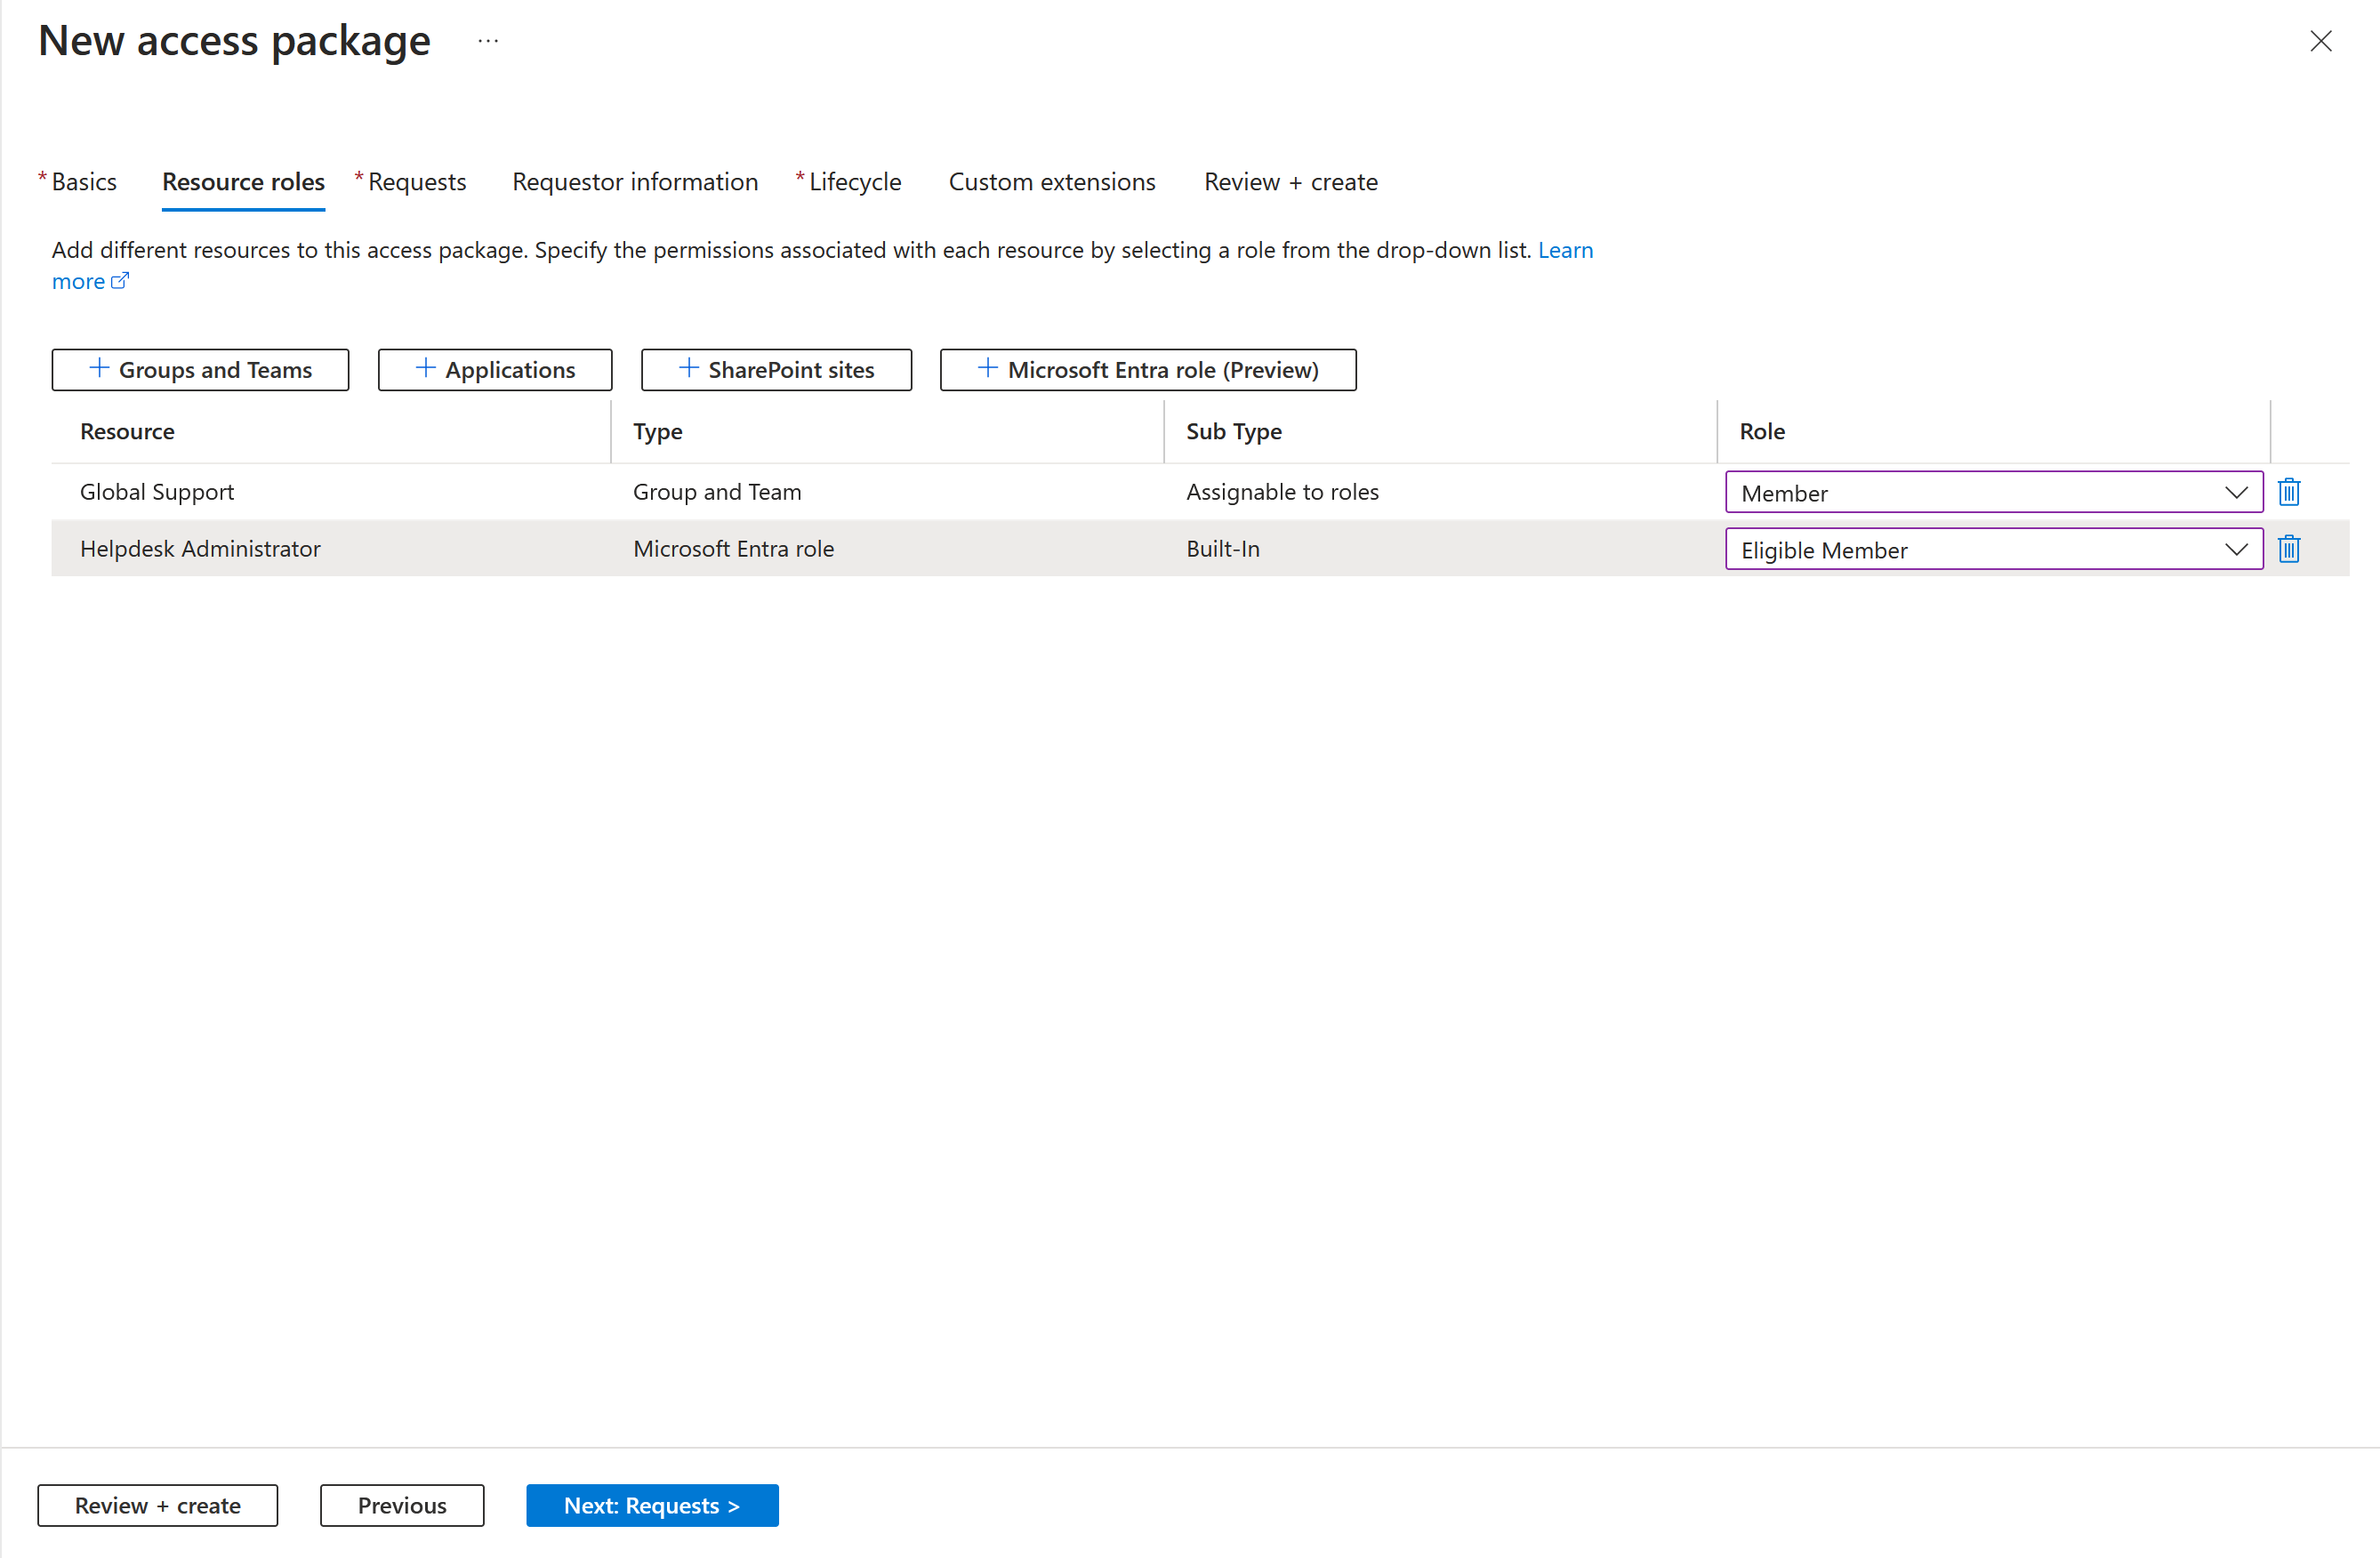 Képernyőkép egy erőforrás-szerepkör új hozzáférési csomaghoz való hozzáadásáról.